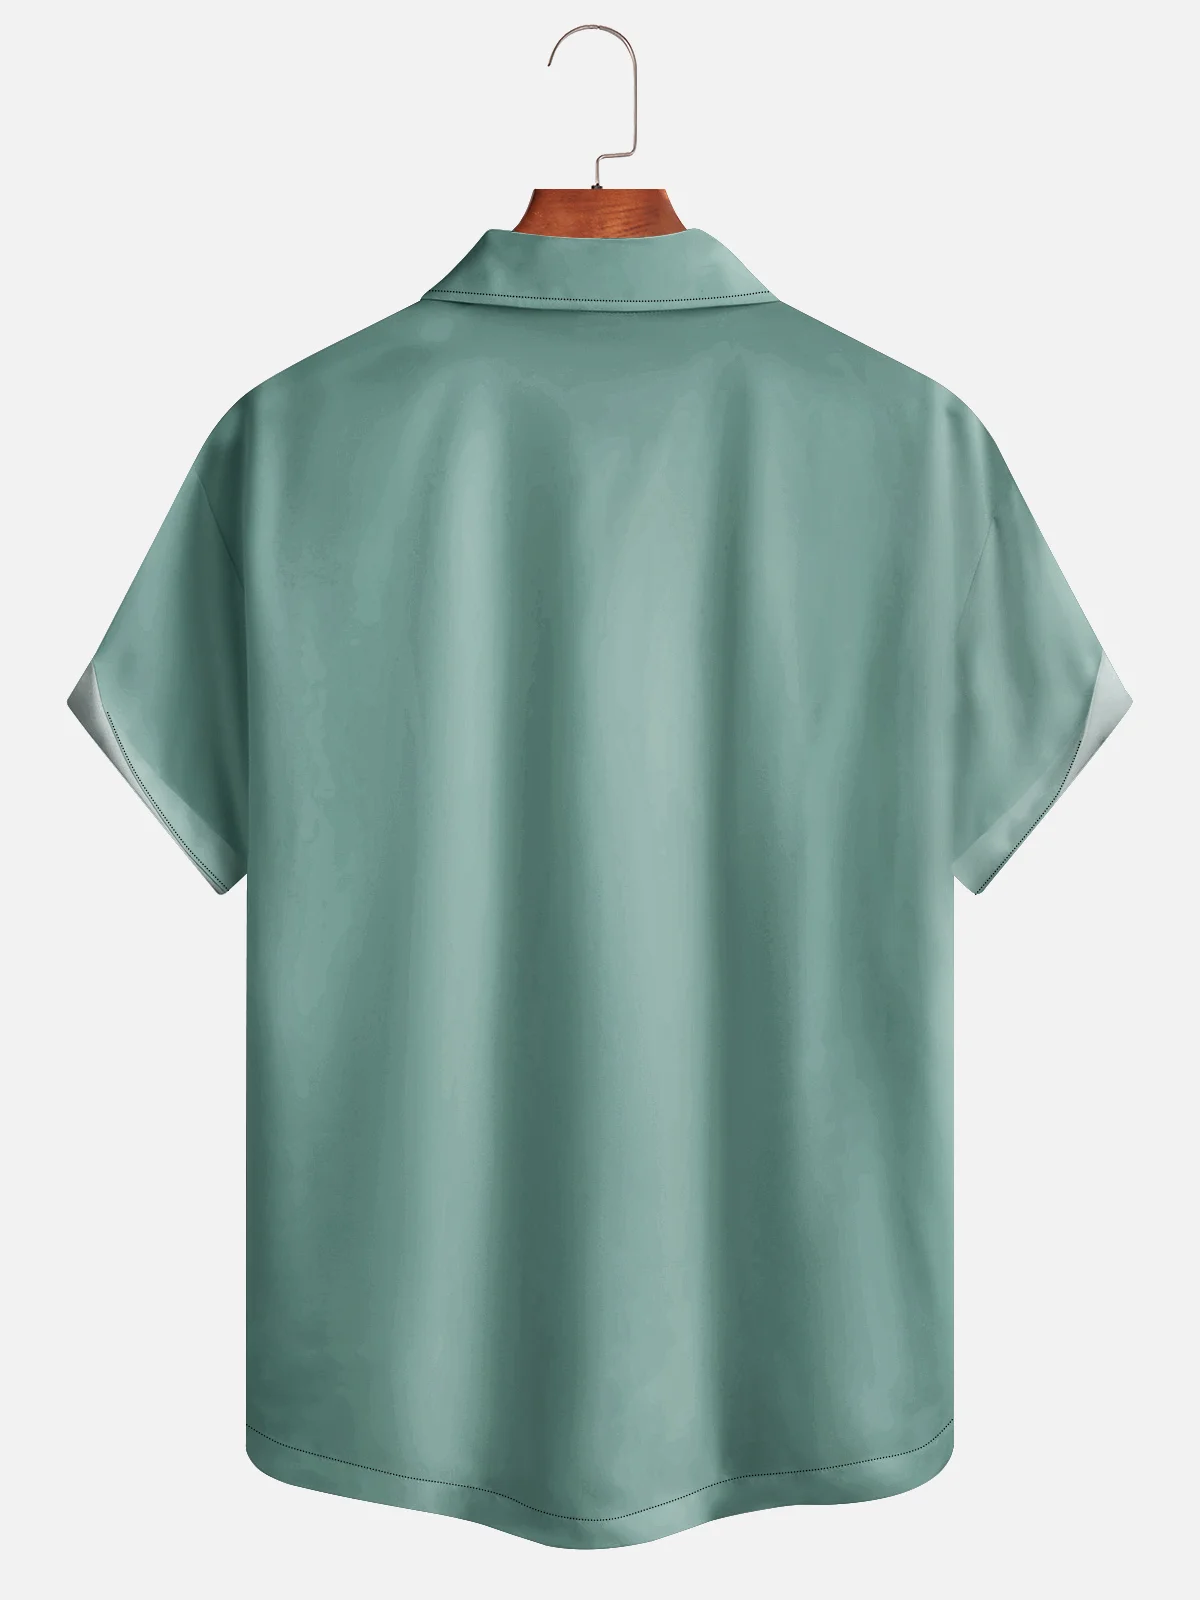 Moisture-wicking Tropical Toucan Bowling Shirt